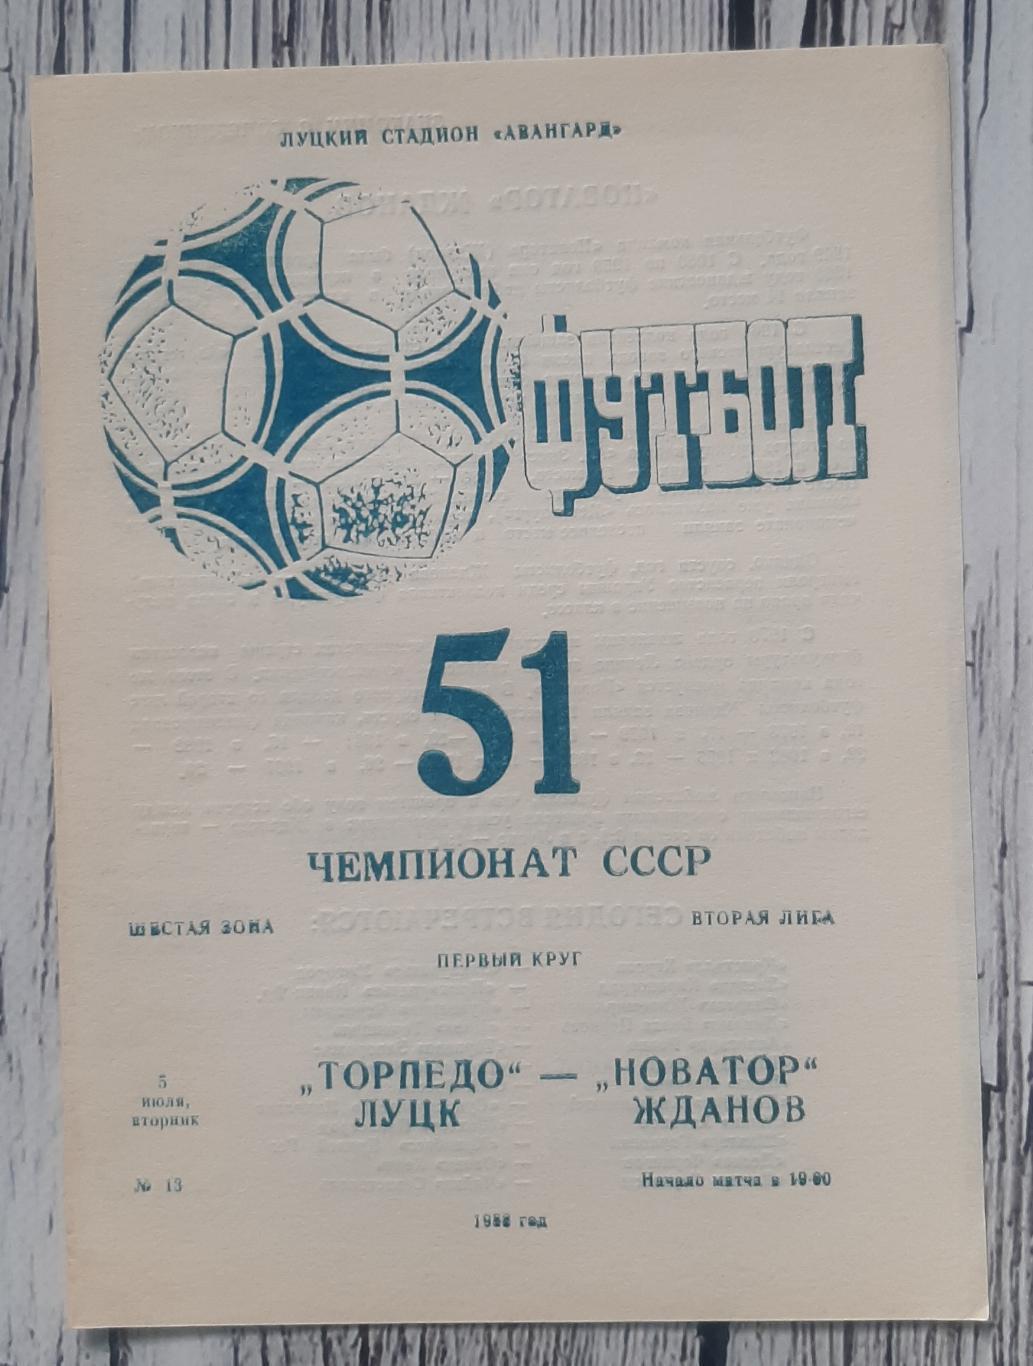 Торпедо Луцьк - Новатор Жданов 05.07.1988